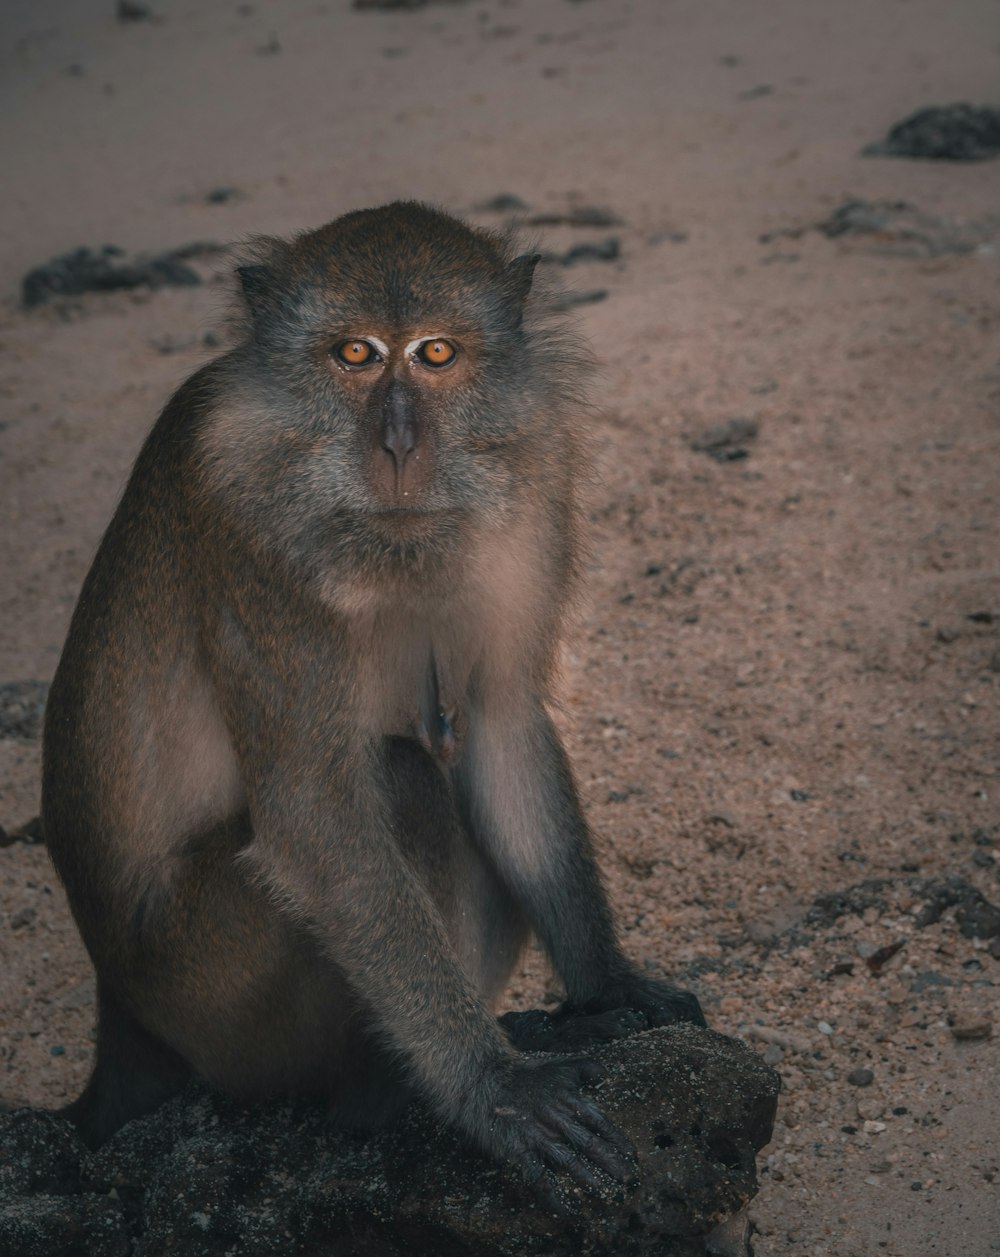 brown monkey sitting on brown soil during daytime